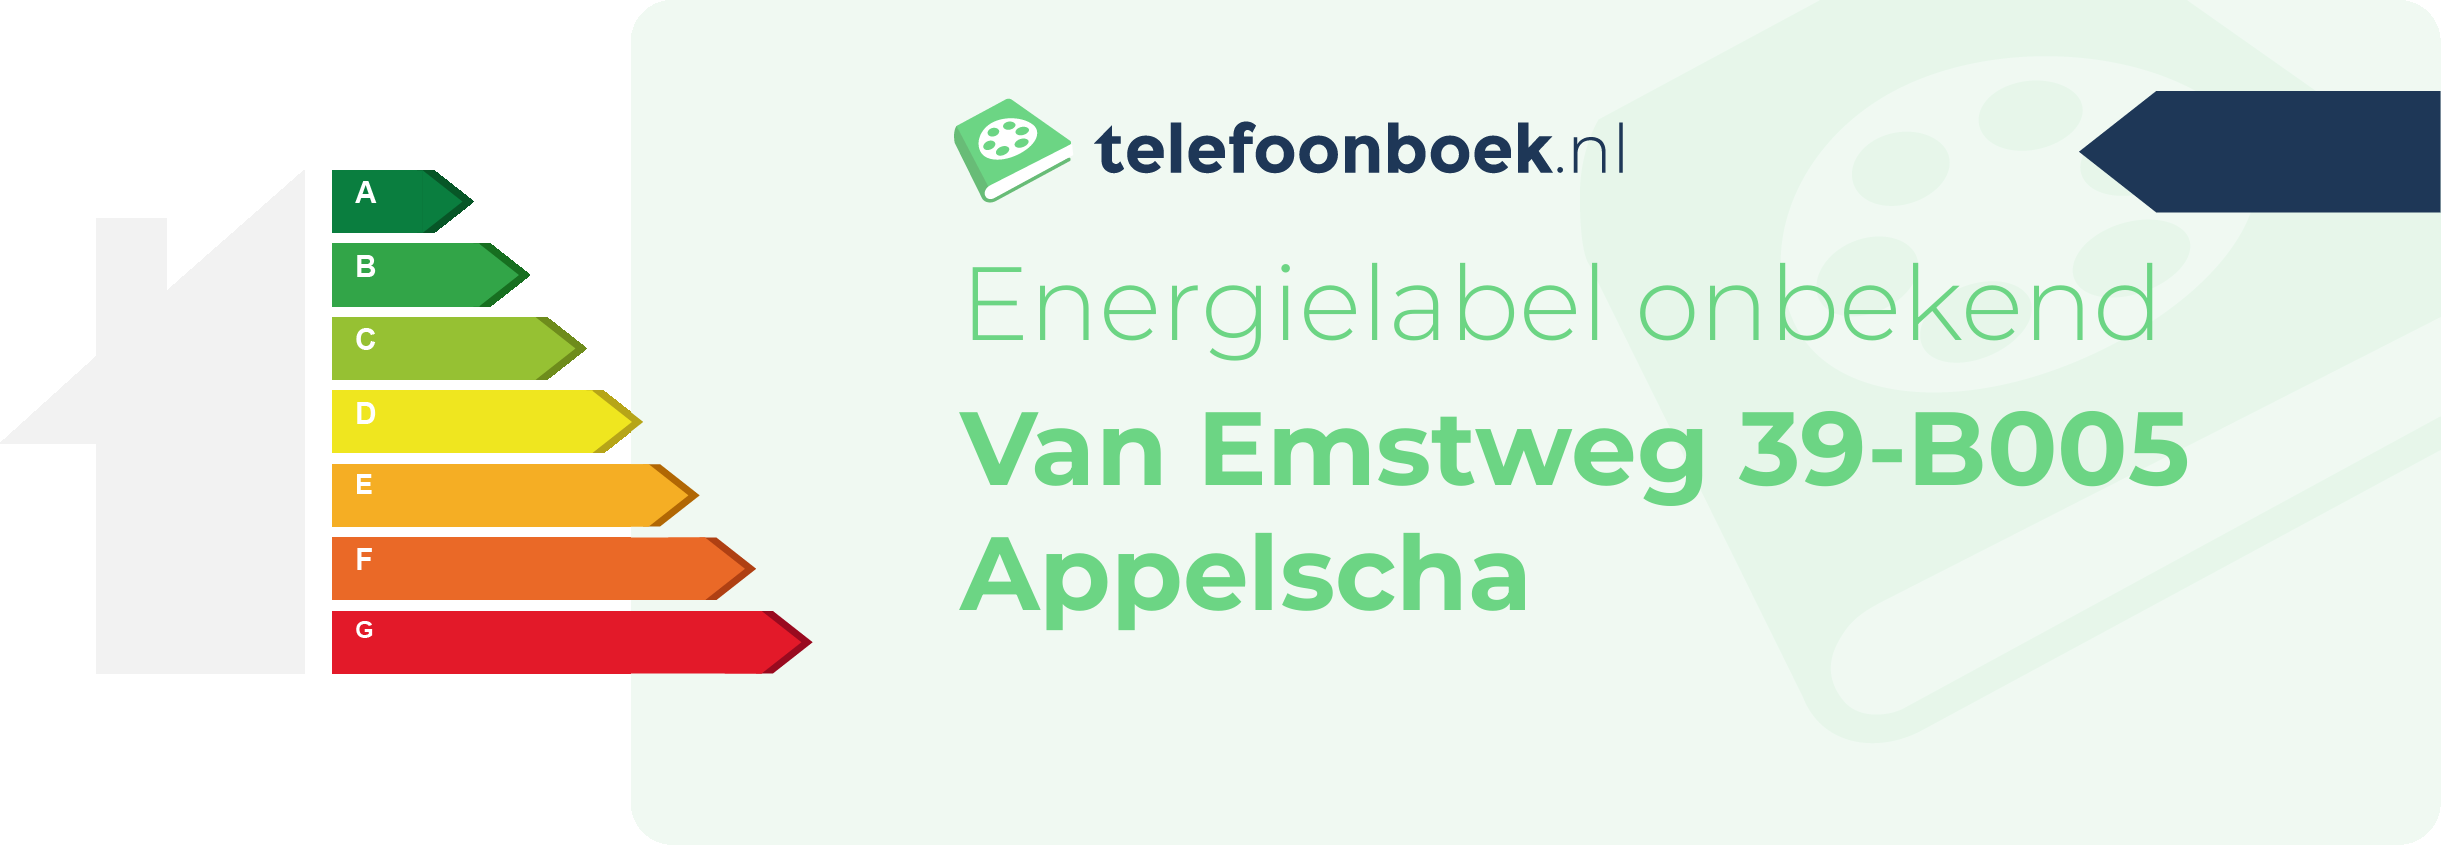 Energielabel Van Emstweg 39-B005 Appelscha